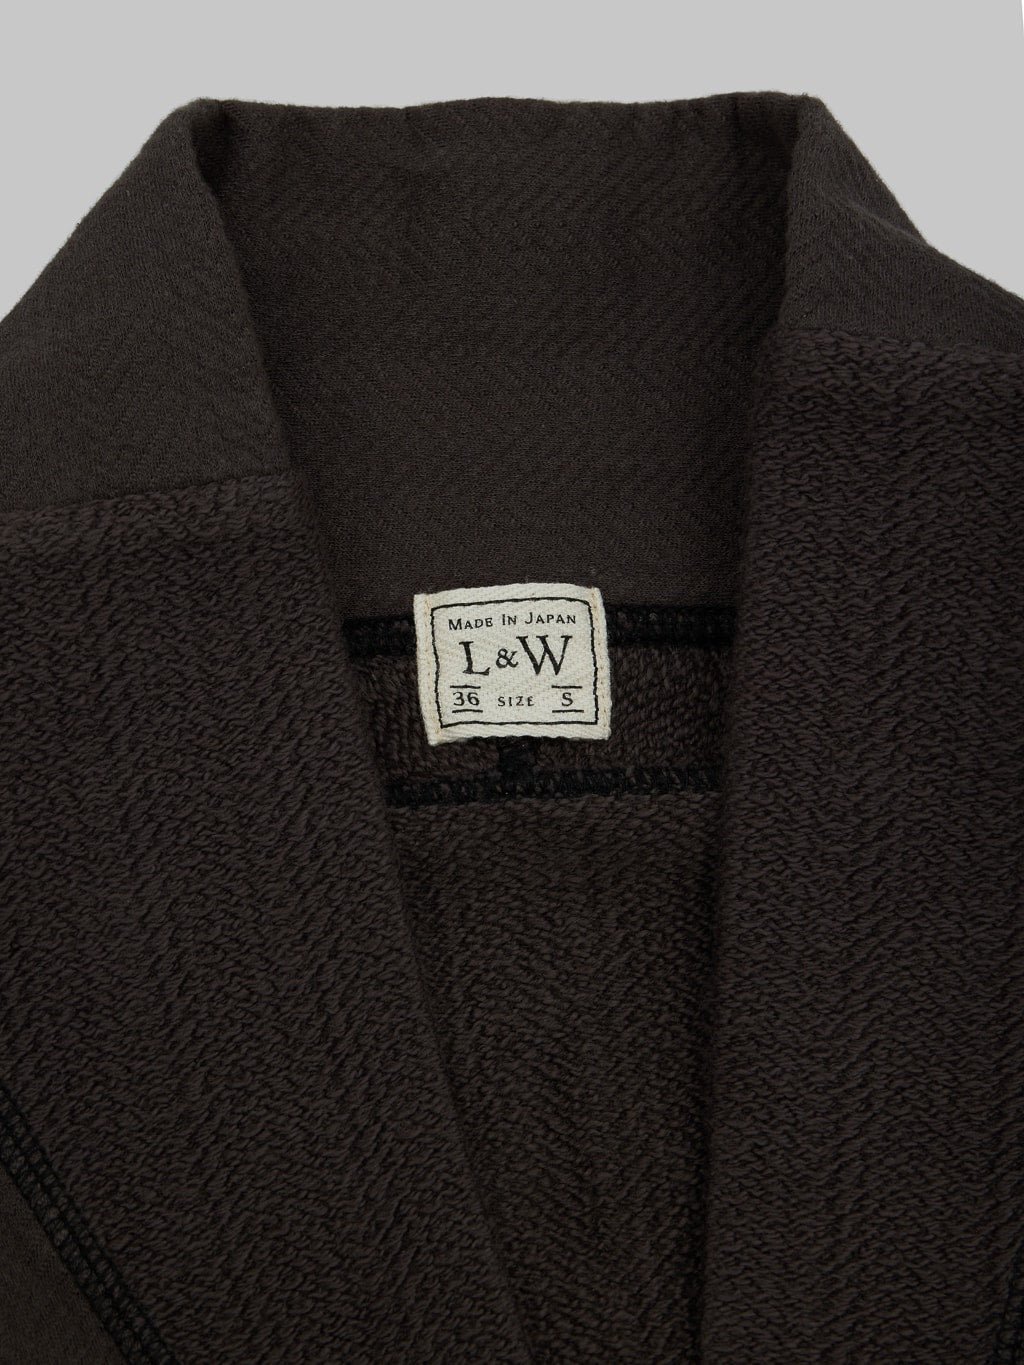 Loop Weft Herringbone Pile Shawl Collar Cardigan Antique Black brand label